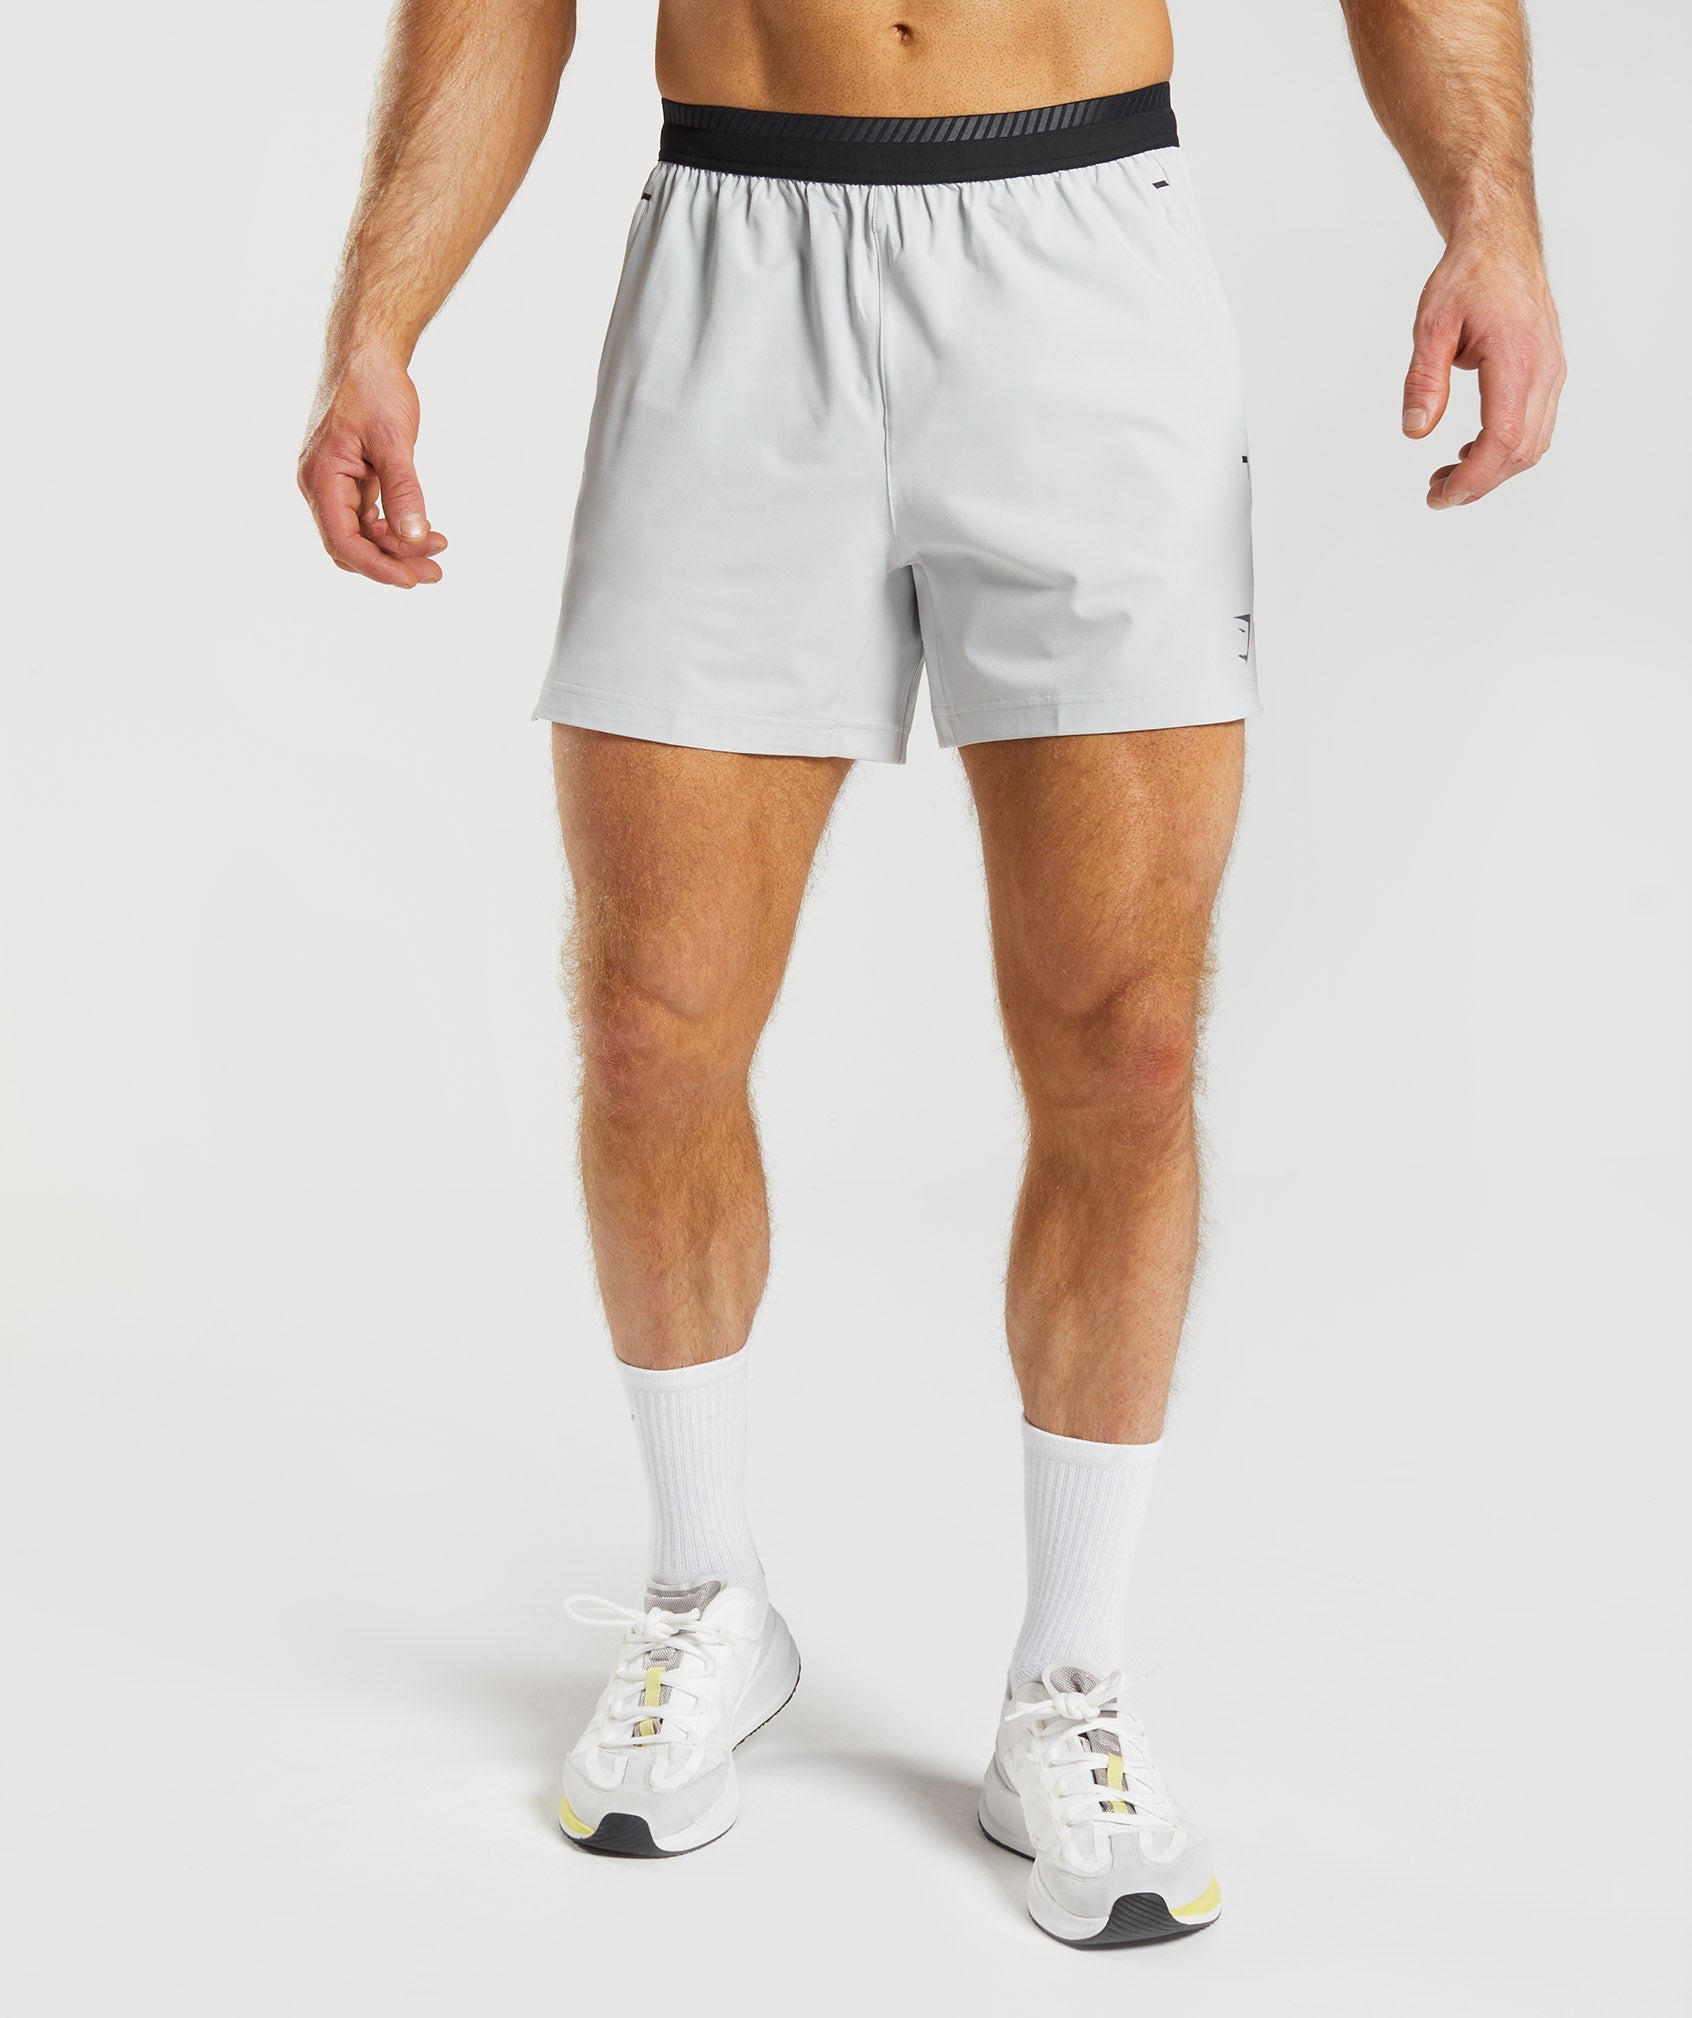 Men's Hybrid Shorts 5, Men's New Arrivals